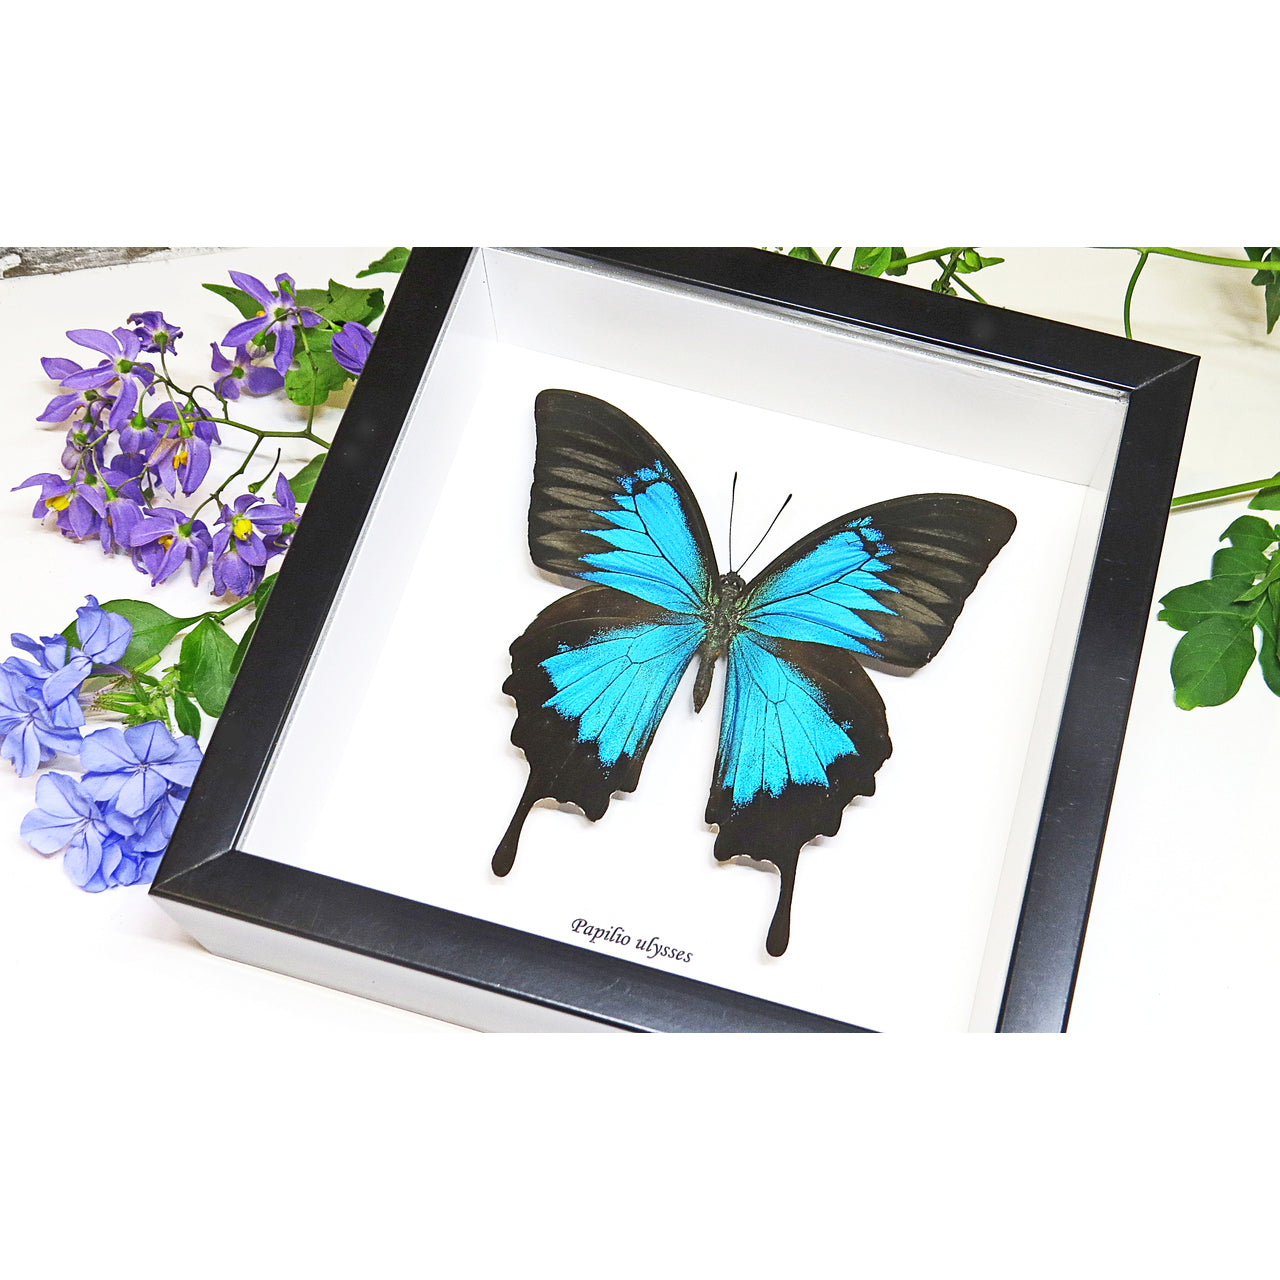 Papilio ulysses - Blue Beetle Australia